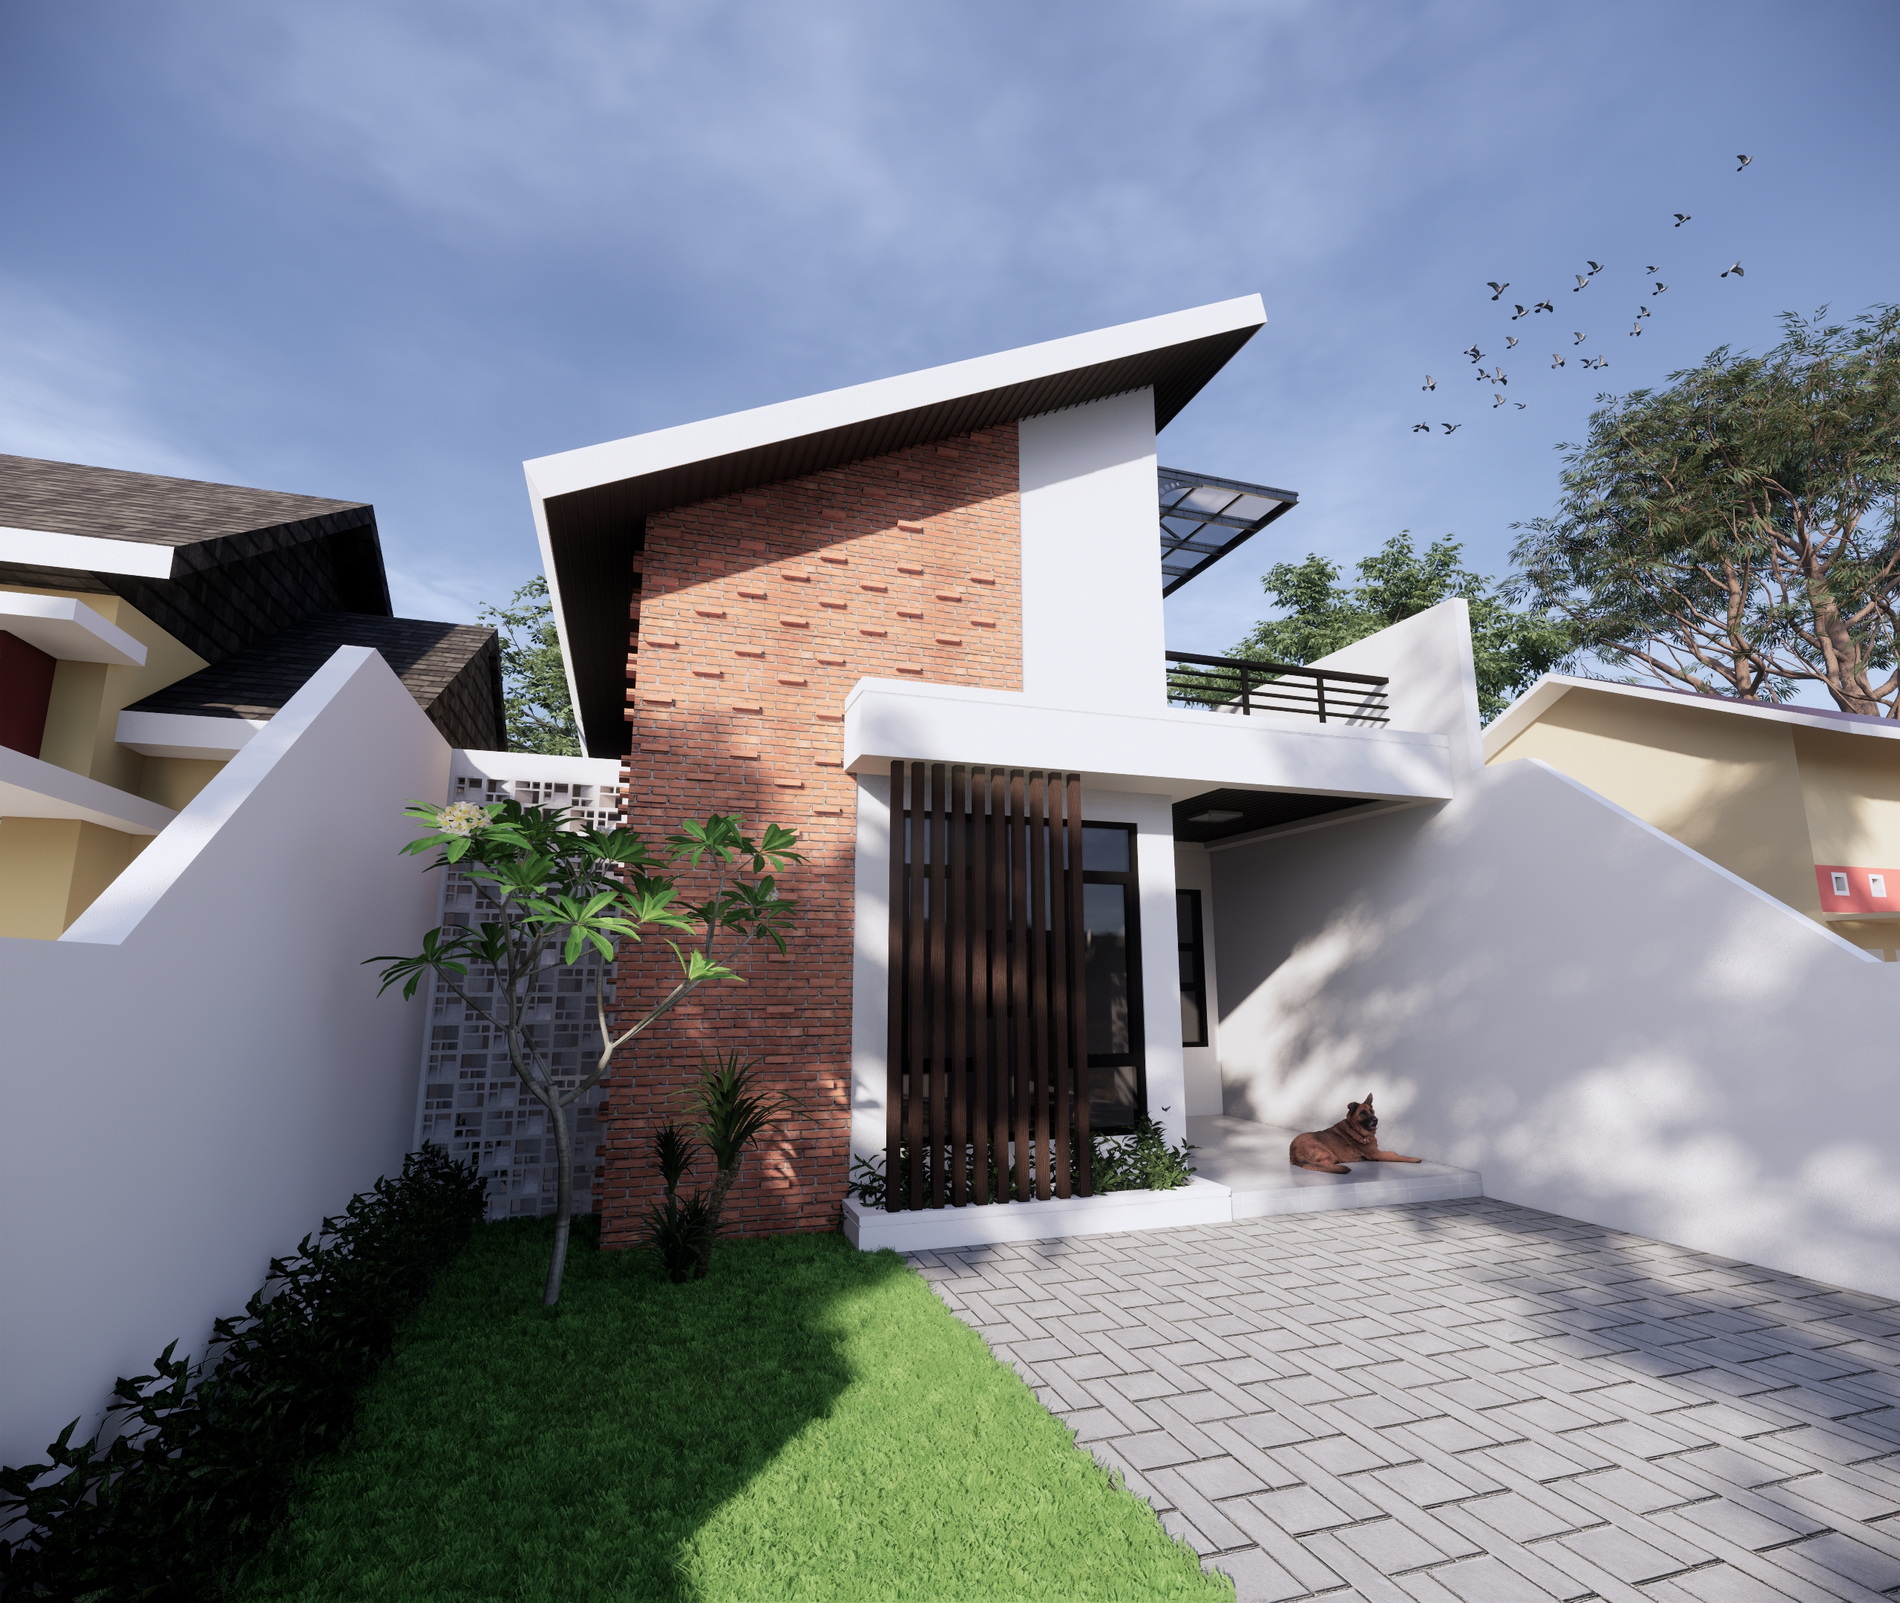 Model rumah sederhana tapi indah diagonal/horizontal flat roof terbuat dari material plat beton.